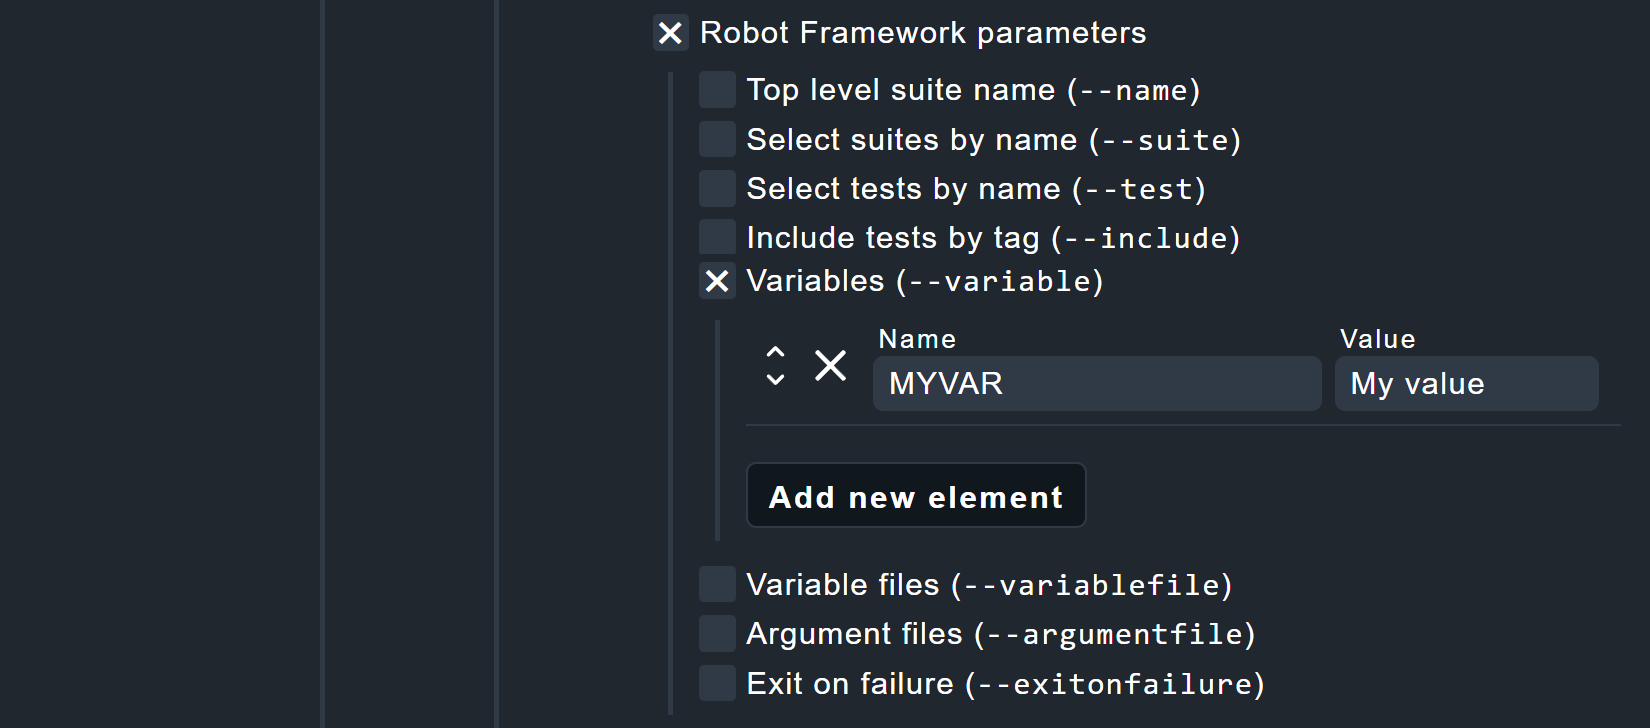 Kommandozeilenparameter von Robot Framework.